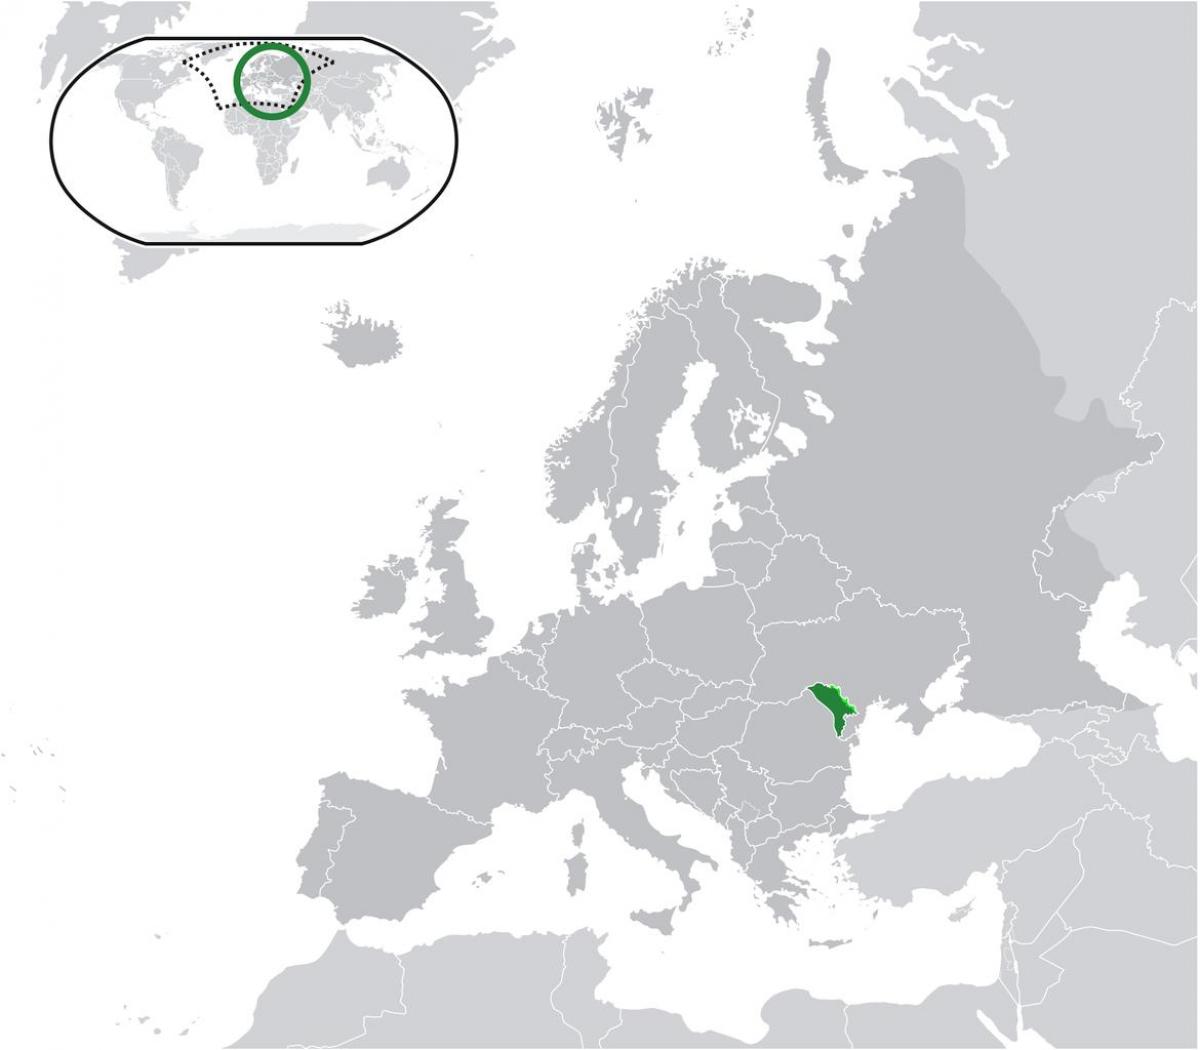 Lokalizacja Mołdawii na mapie świata